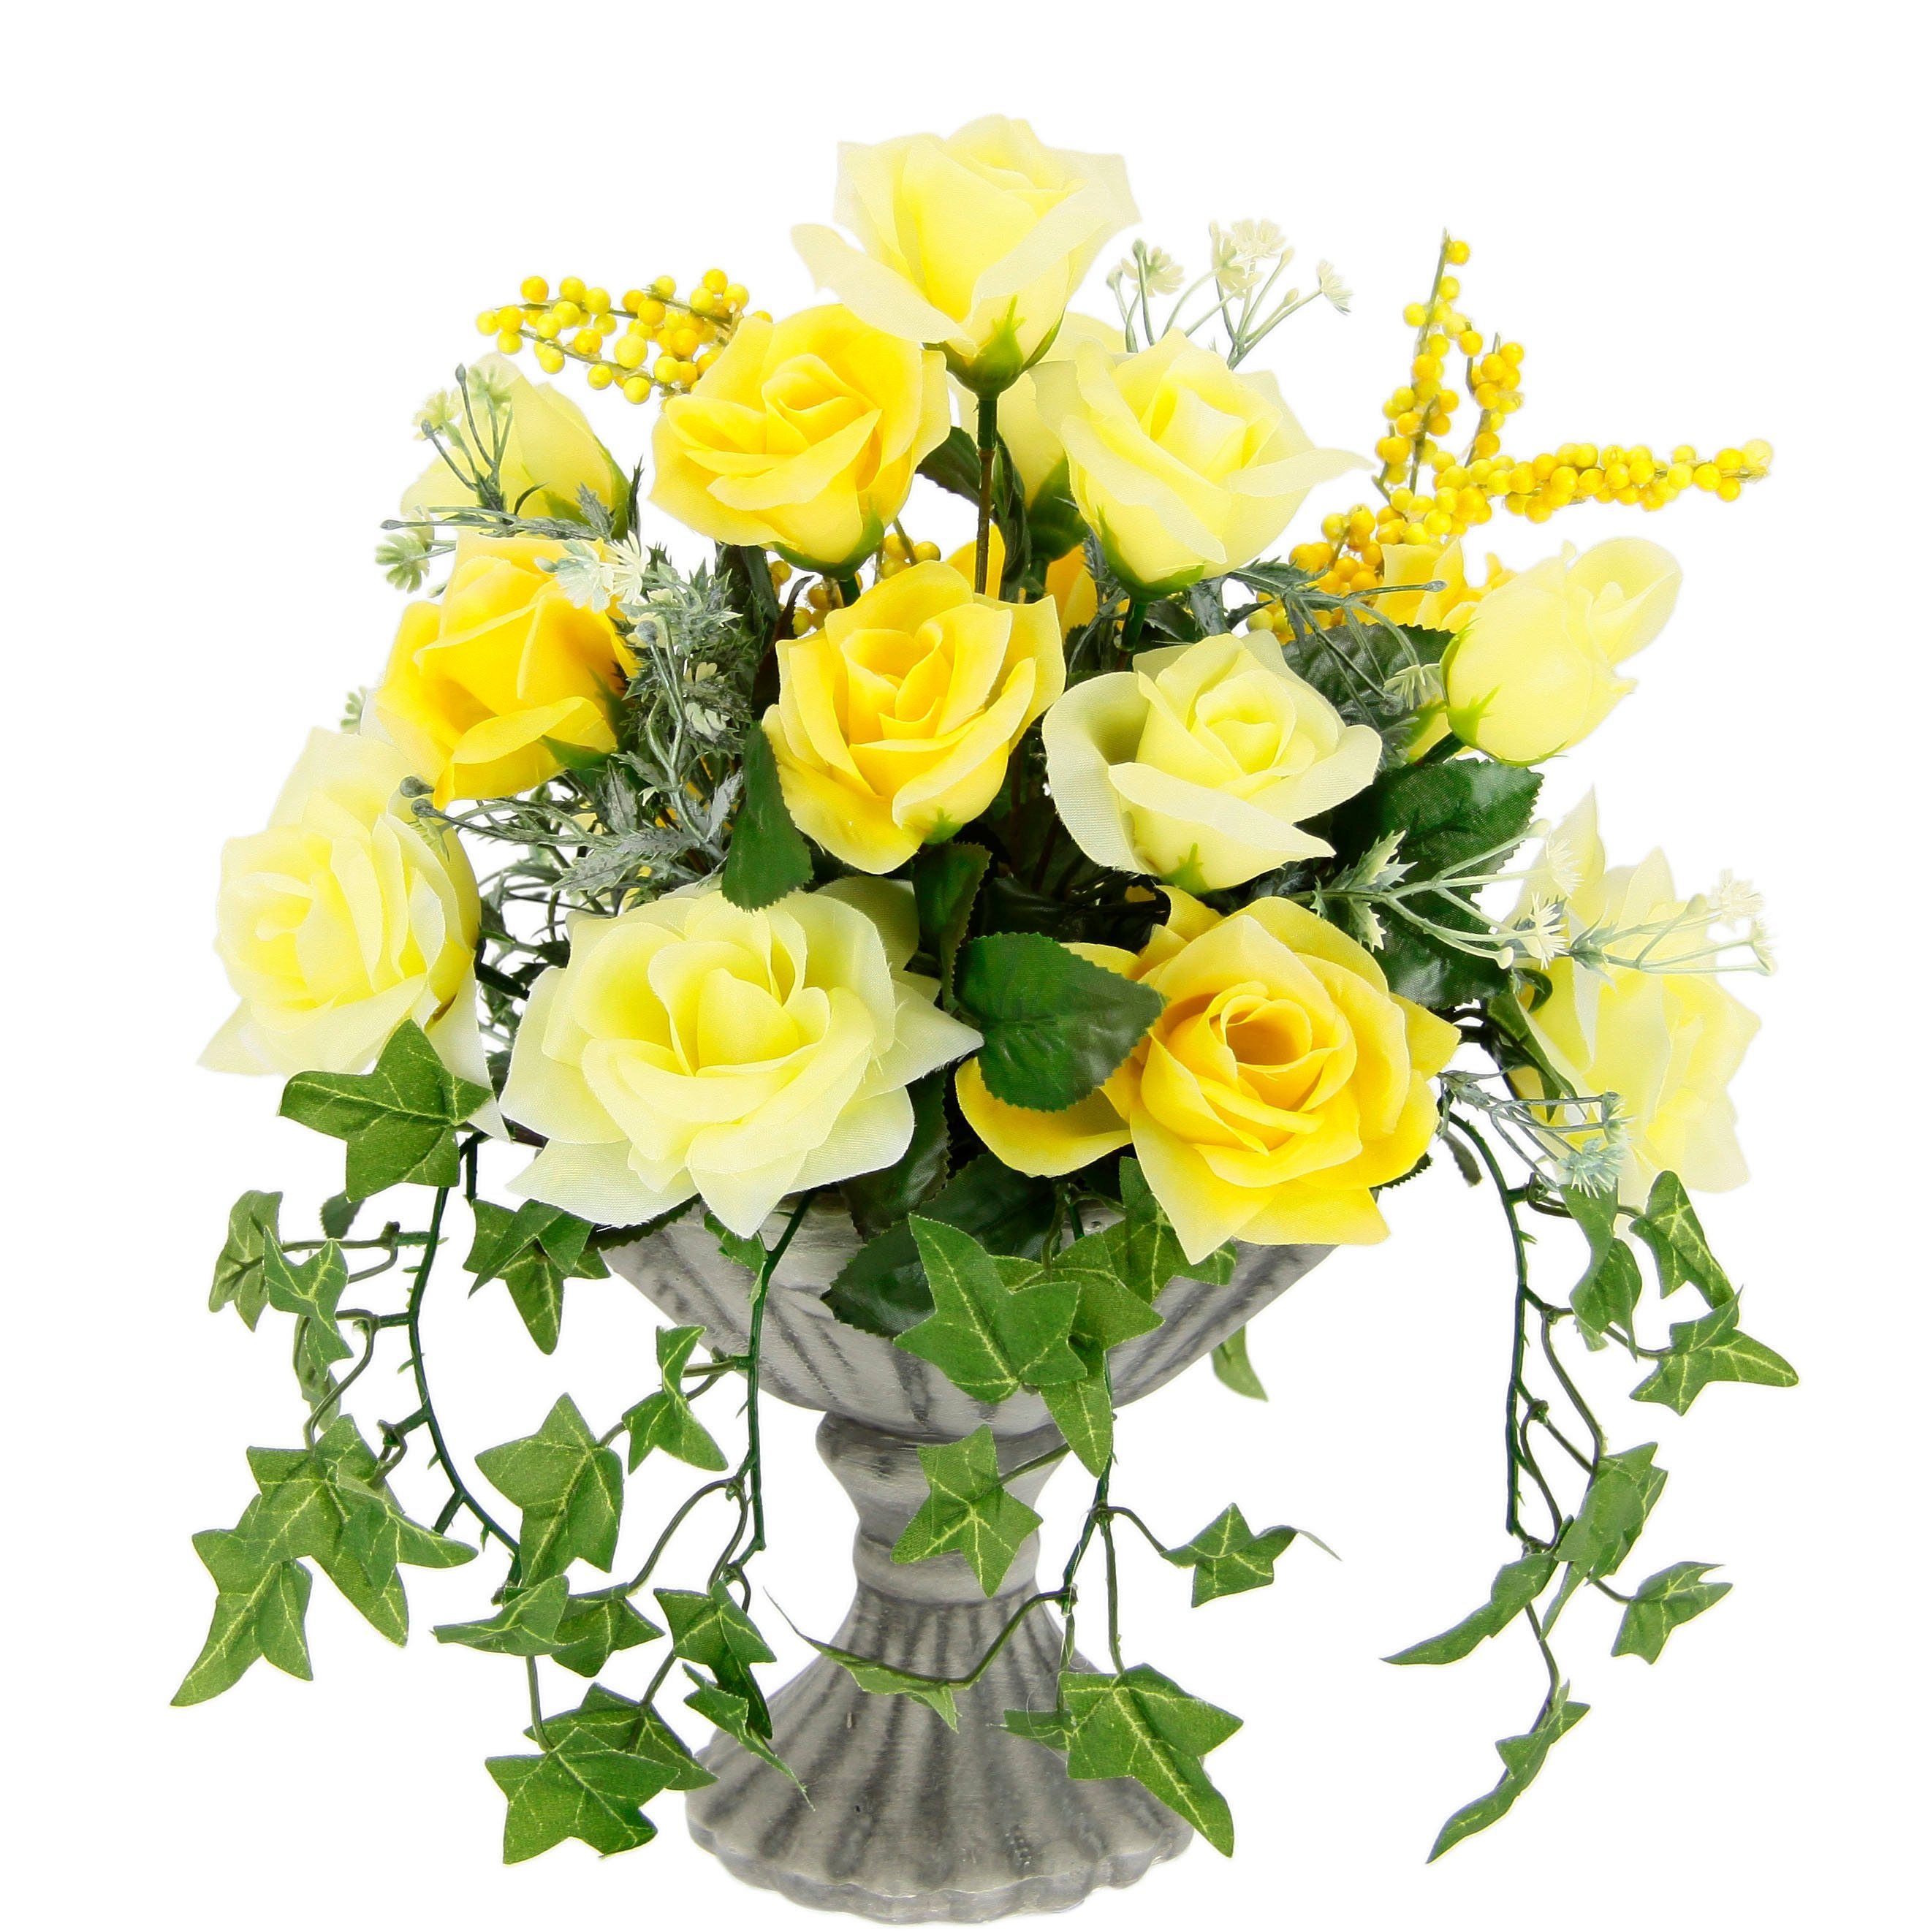 Kunstblume Rosen, I.GE.A., Höhe 35 cm, Im Pokal aus Keramik Grabschmuck Künstliche Blumen Rose